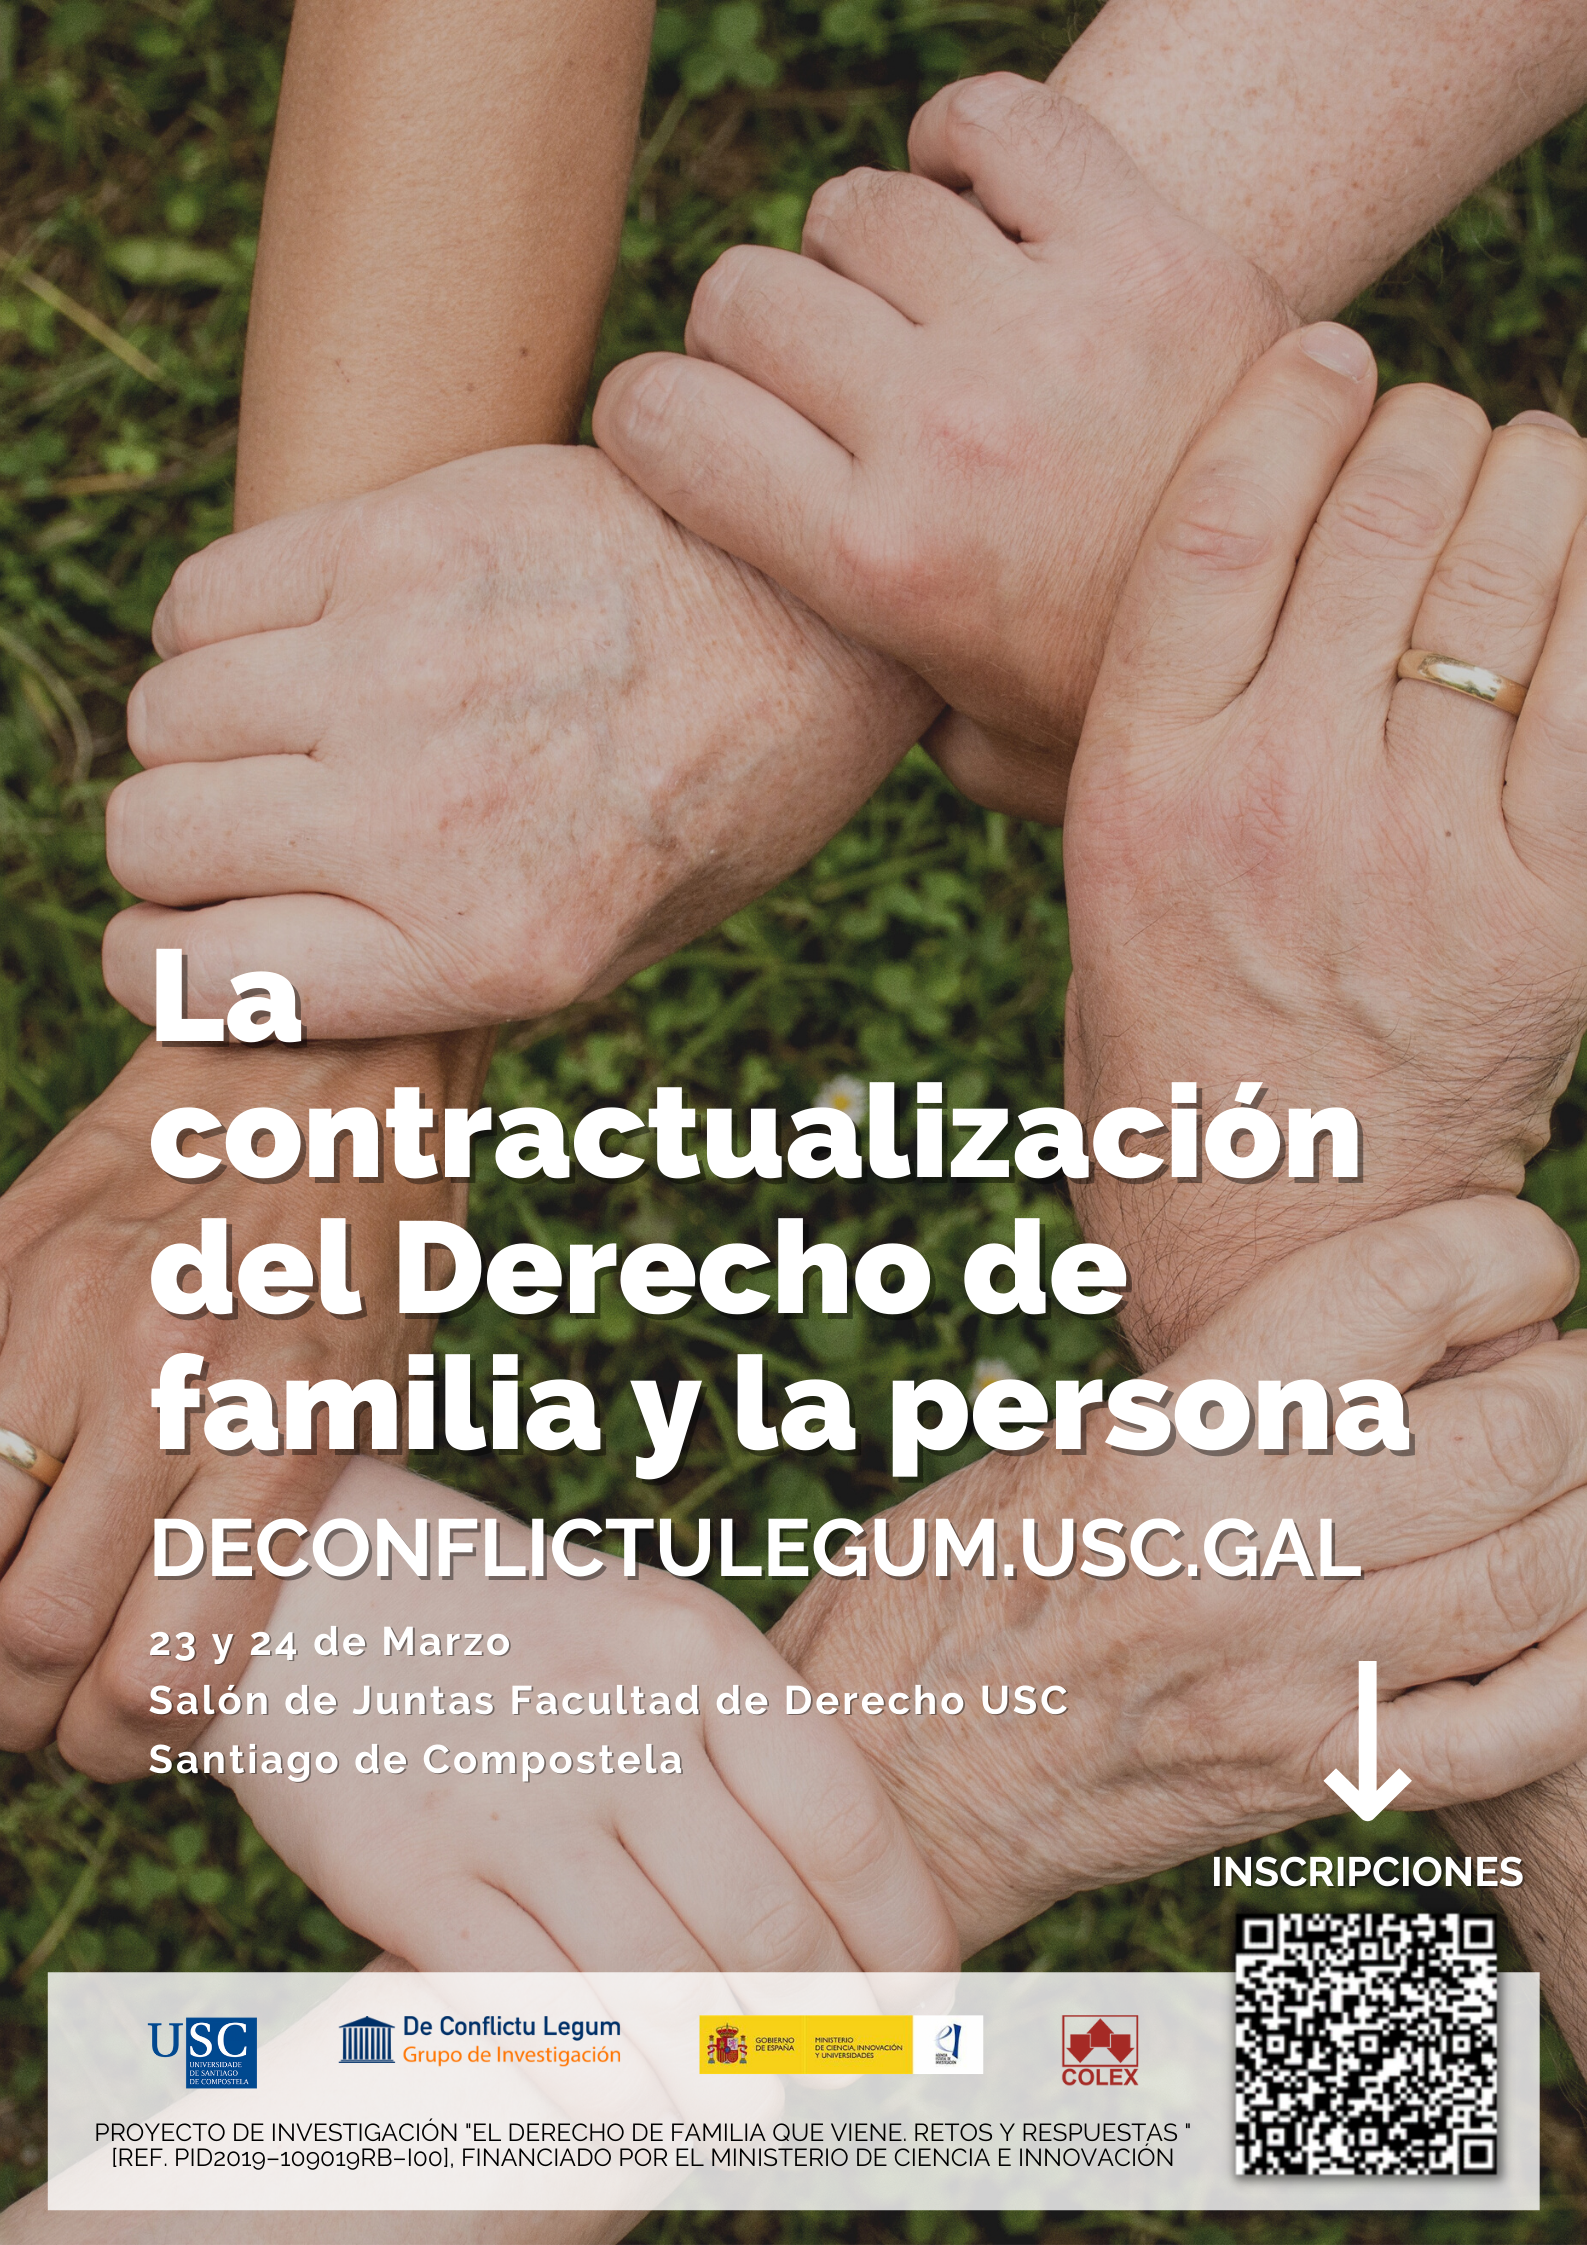 La contractualización del Derecho de familia y la persona